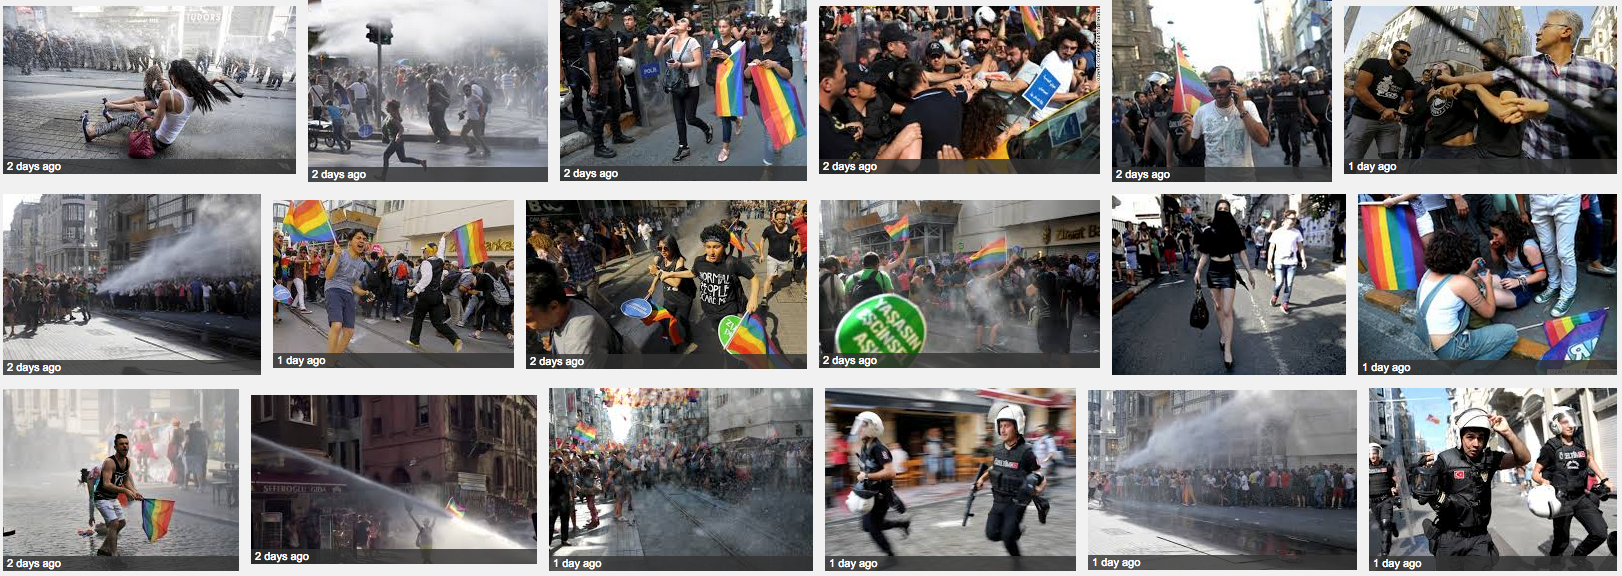 Google image search Turkey pride parade 2015